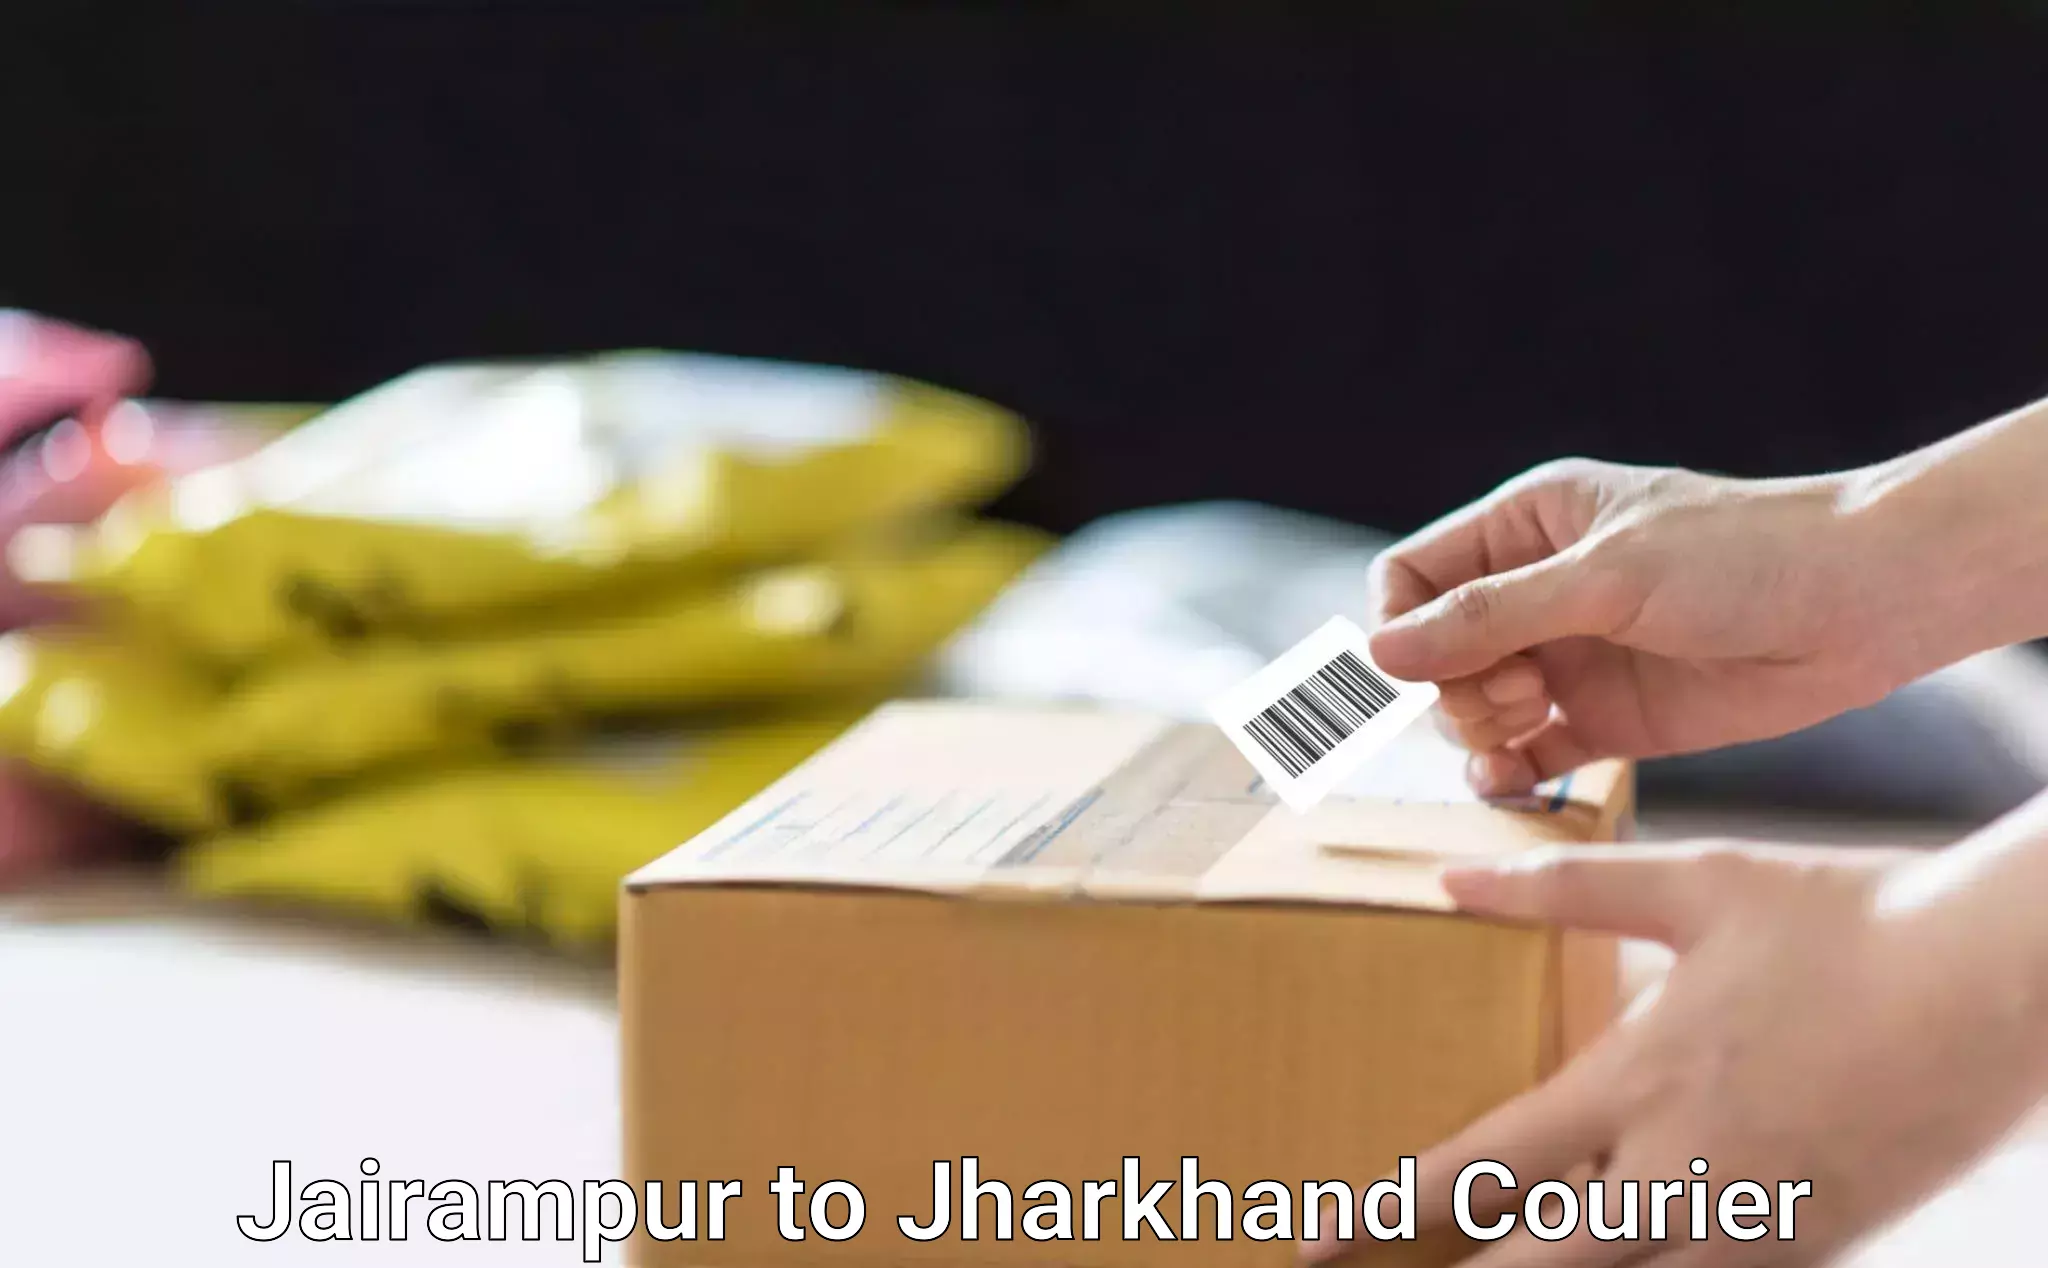 Next-generation courier services Jairampur to Ghatshila